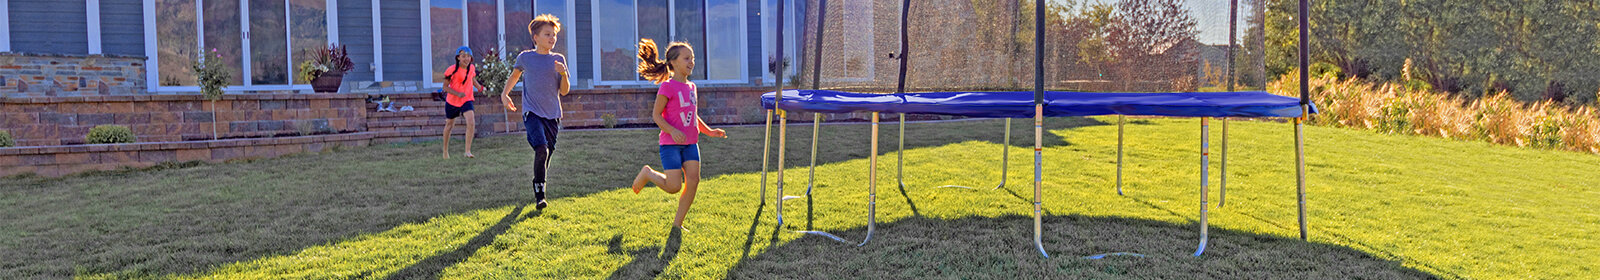 Children excitedly running towards a Skywalker Trampolines round trampoline in their backyard